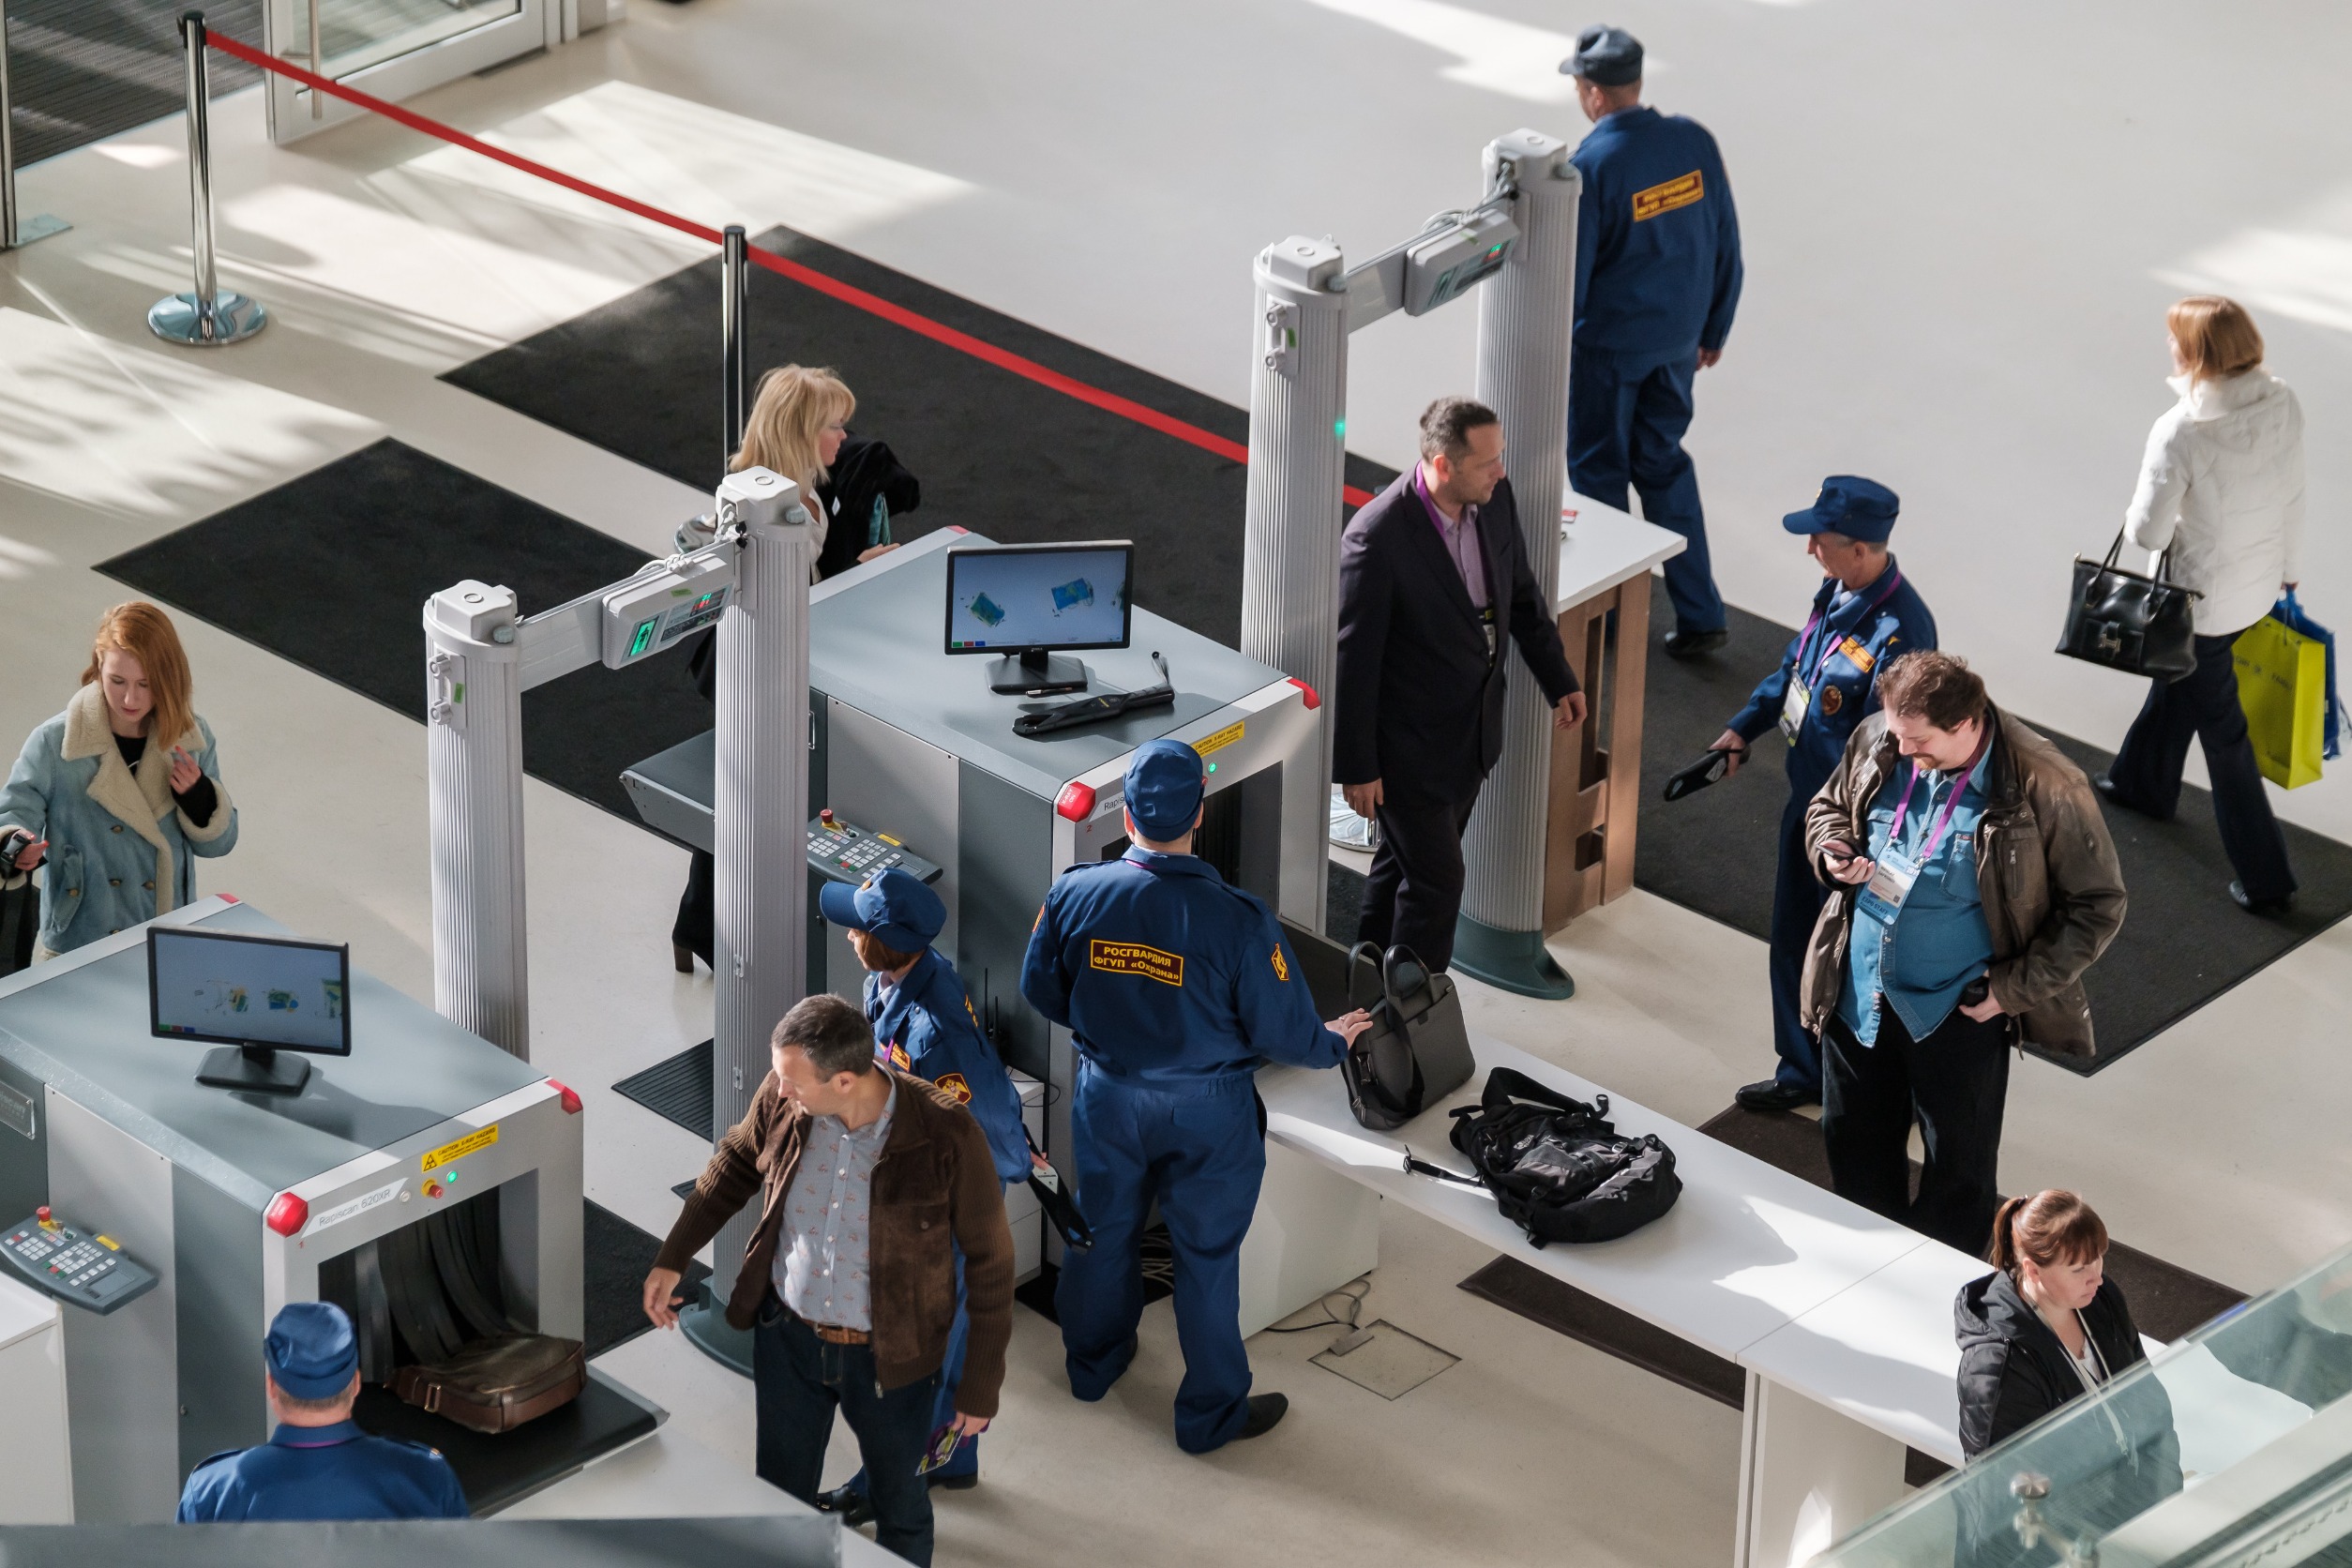 How to Pack for Fly - OAJ TSA